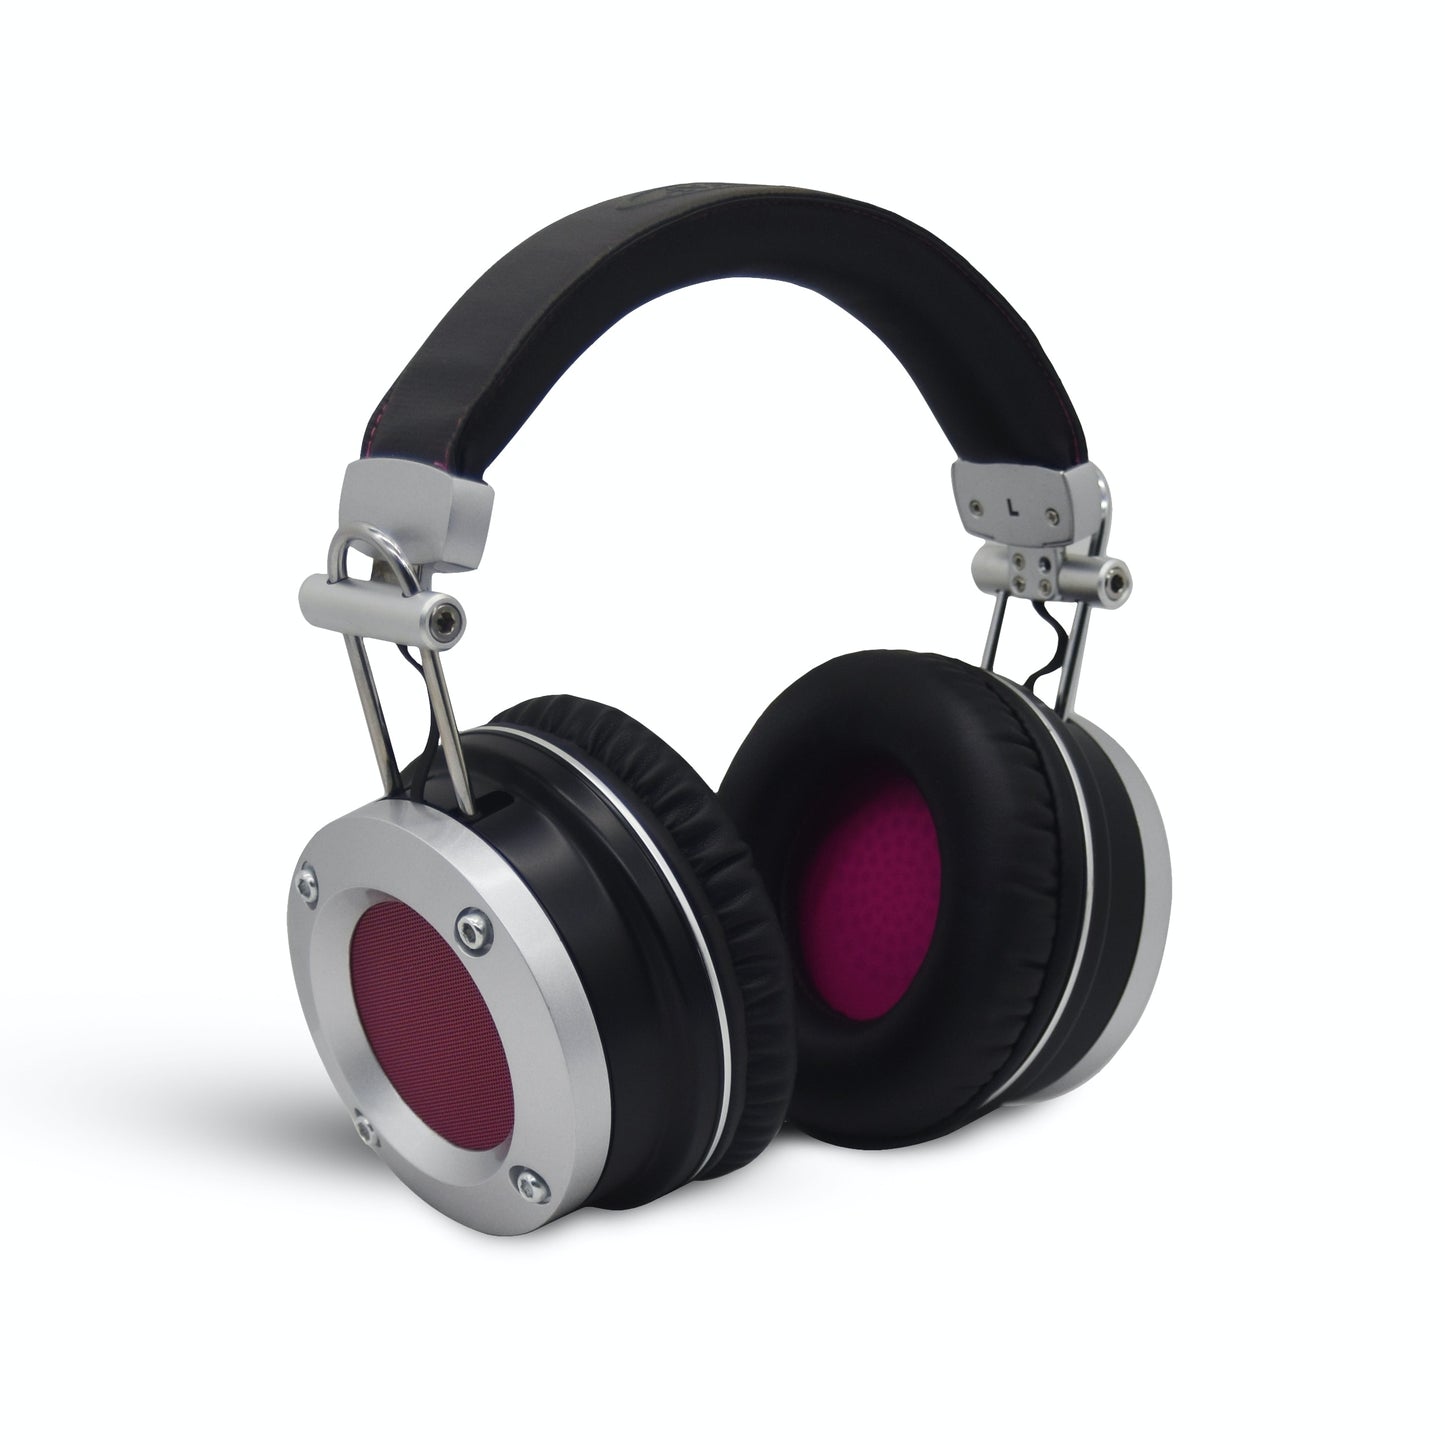 Avantone MP1 Studio Reference Headphones